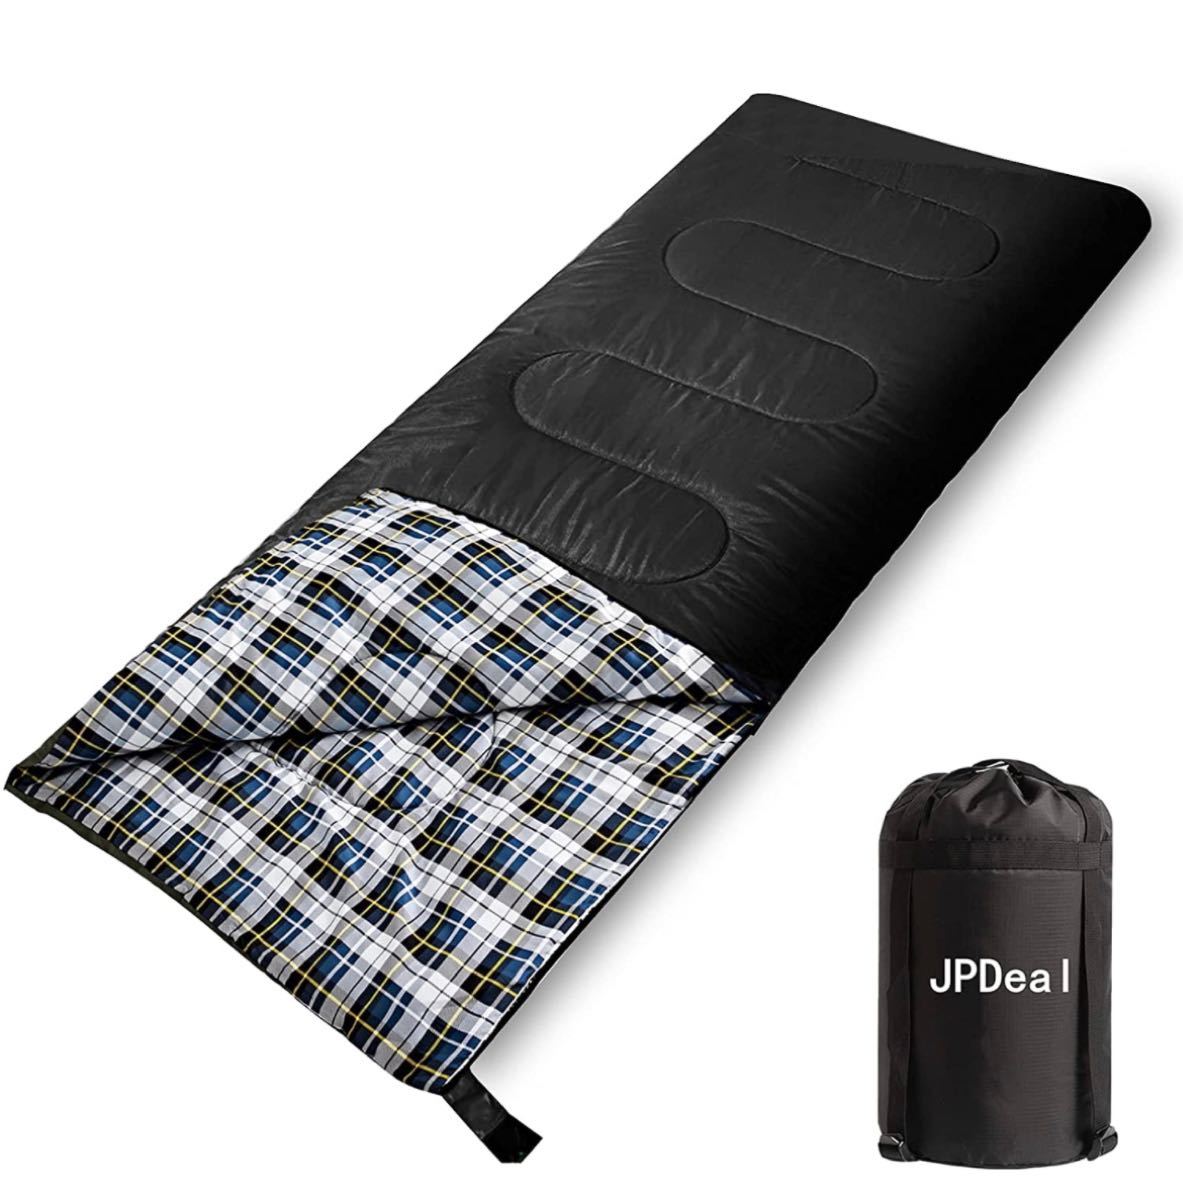 寝袋 1.5kg シュラフ 封筒型 保温 軽量 210T防水シュラフ 快適温度-10℃~25℃ 春用 夏用 秋用 冬用